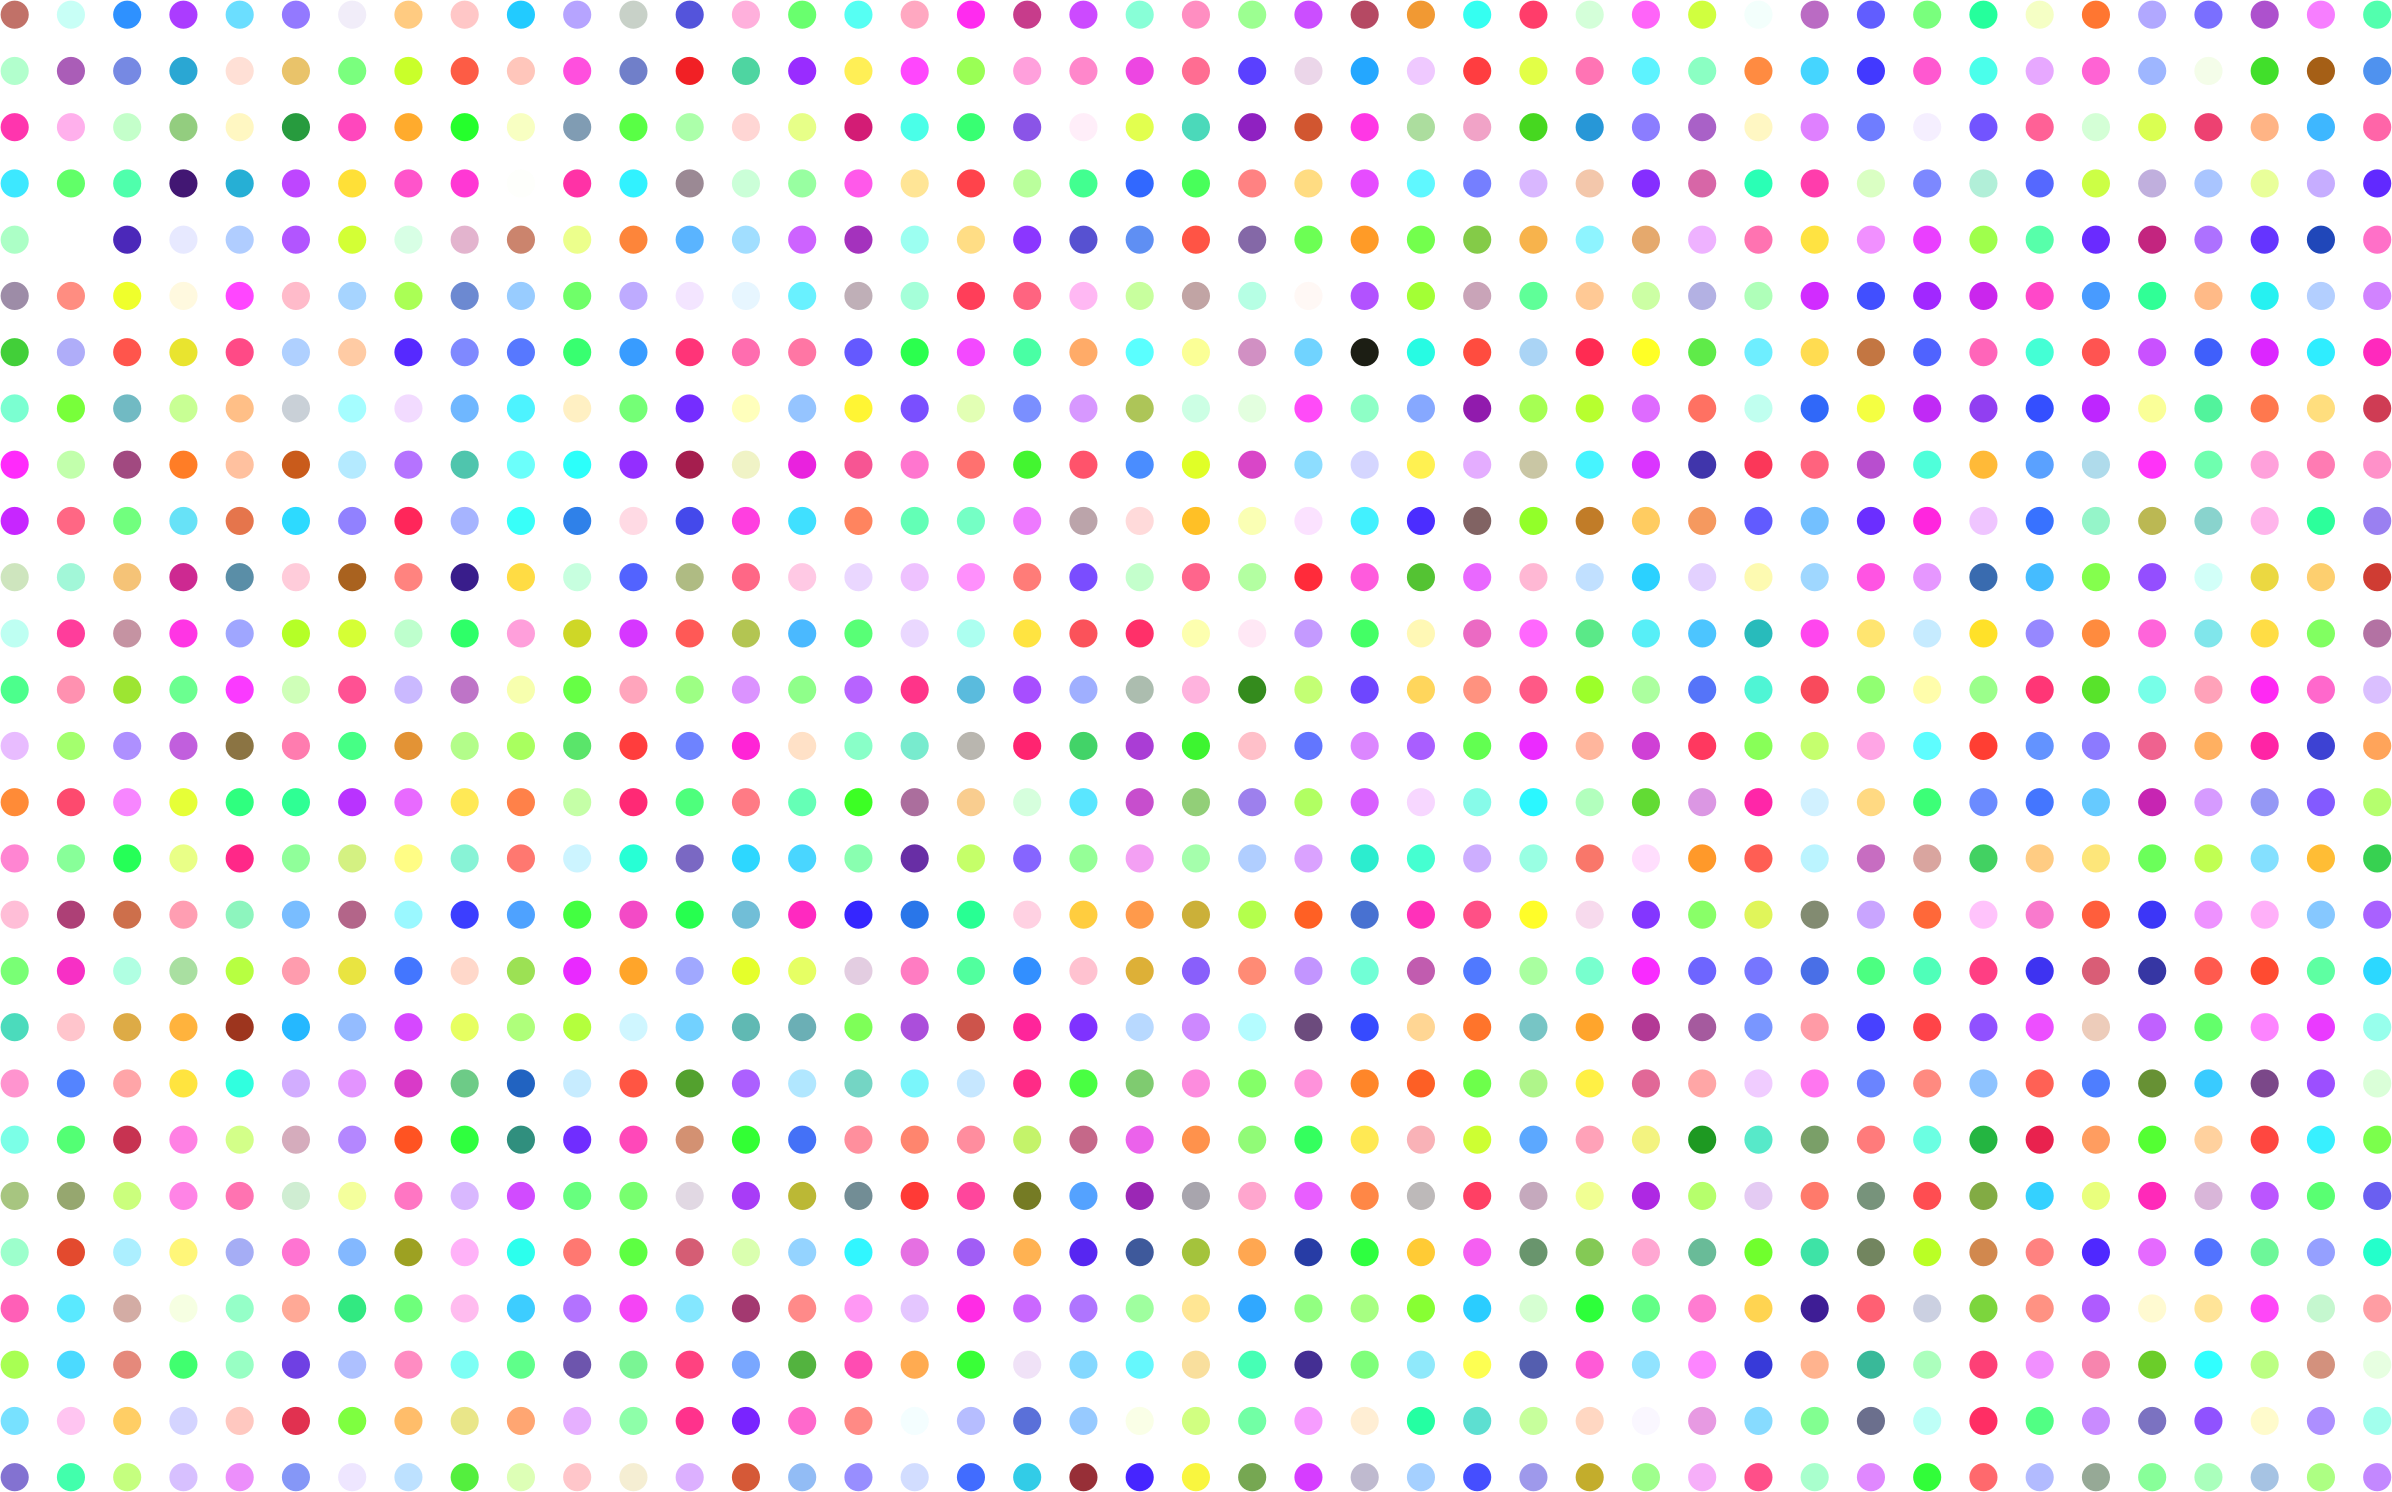 Polka Dot Background PNG Transparent Polka Dot Background.PNG Images